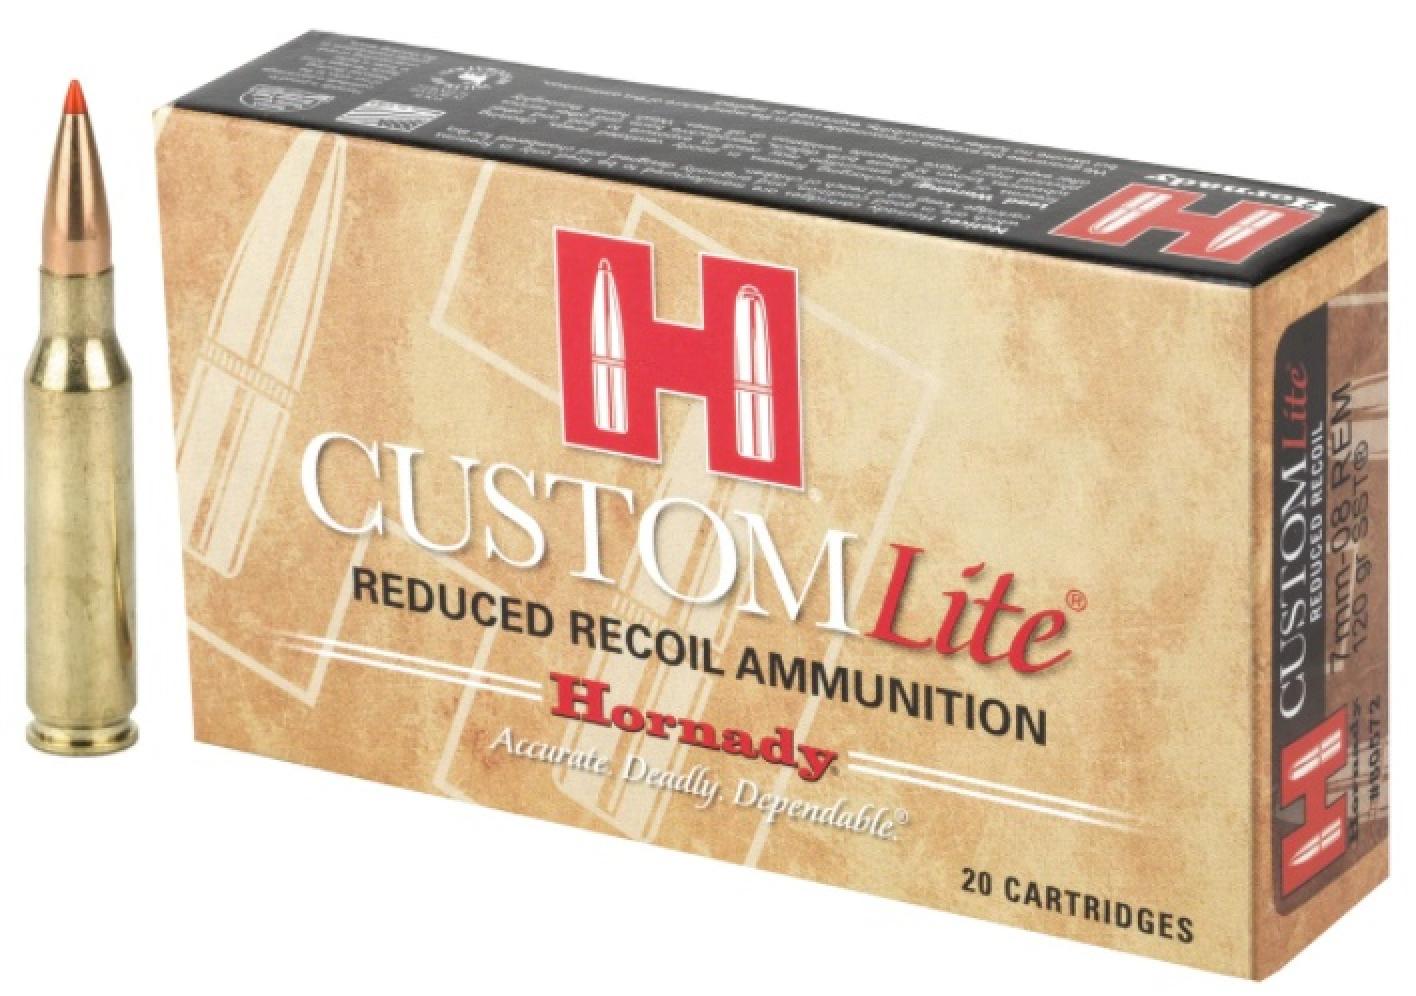 Hornady Custom Lite 7mm-08 Remington 120 grain SST